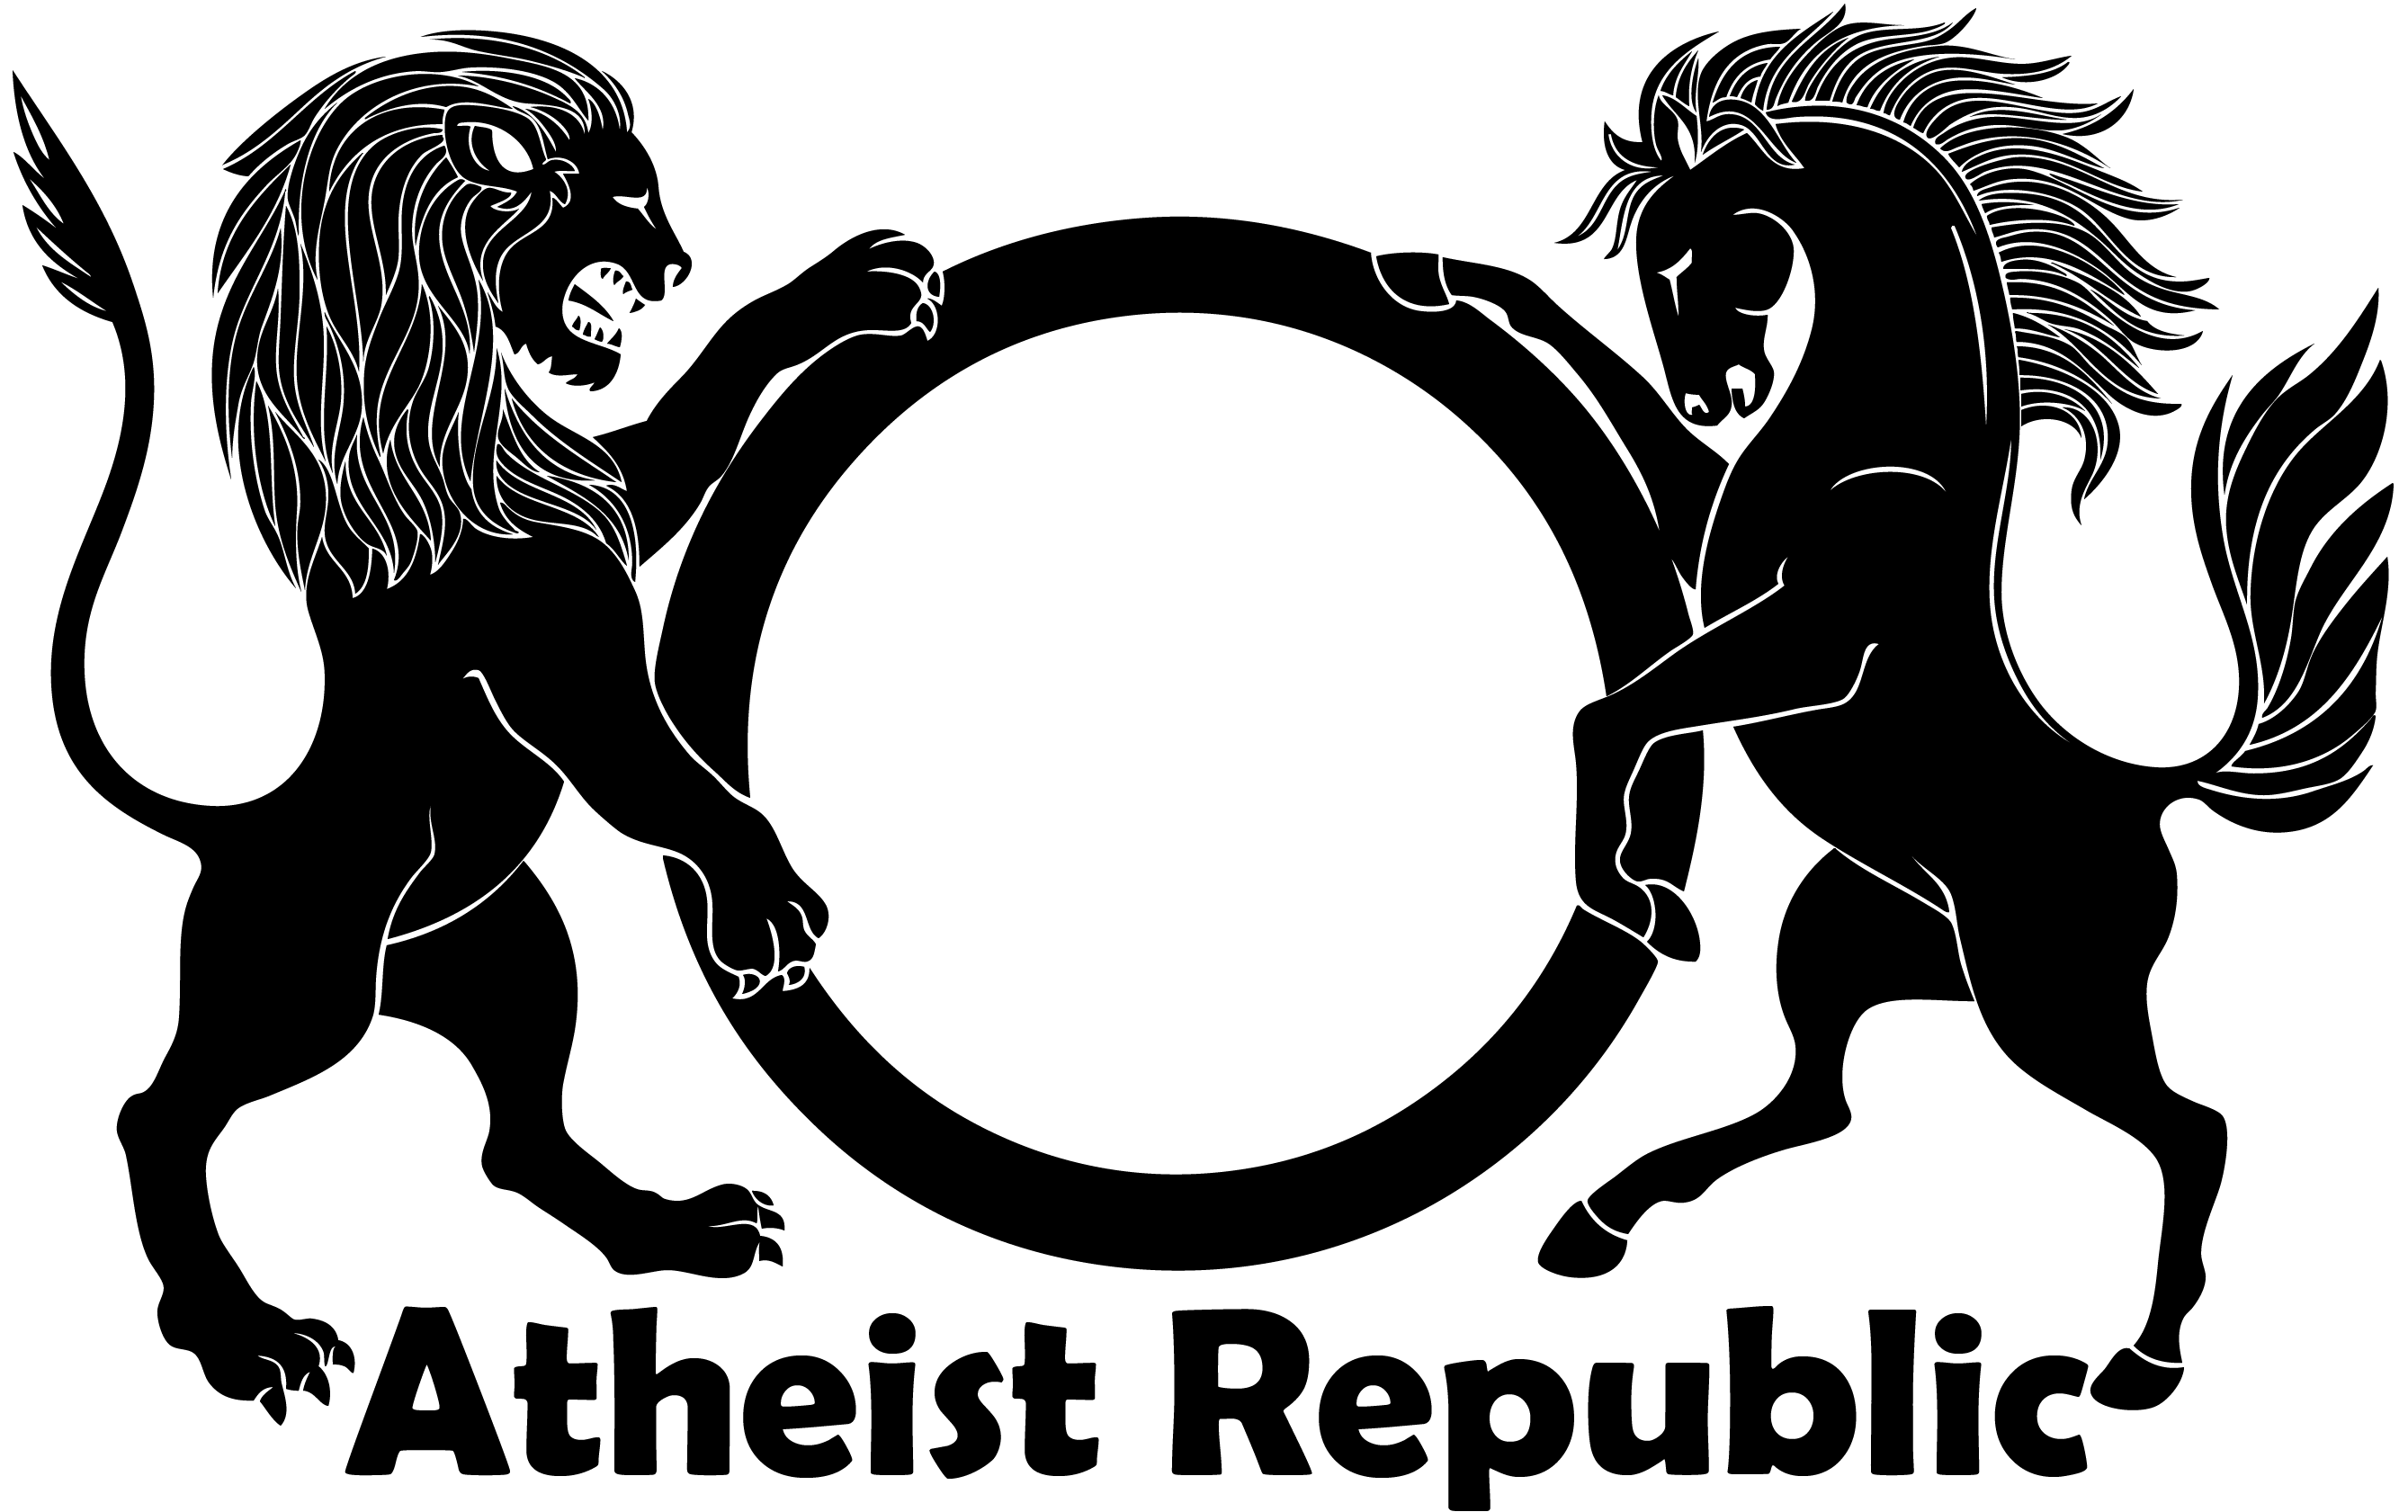 Atheist Republic Symbol